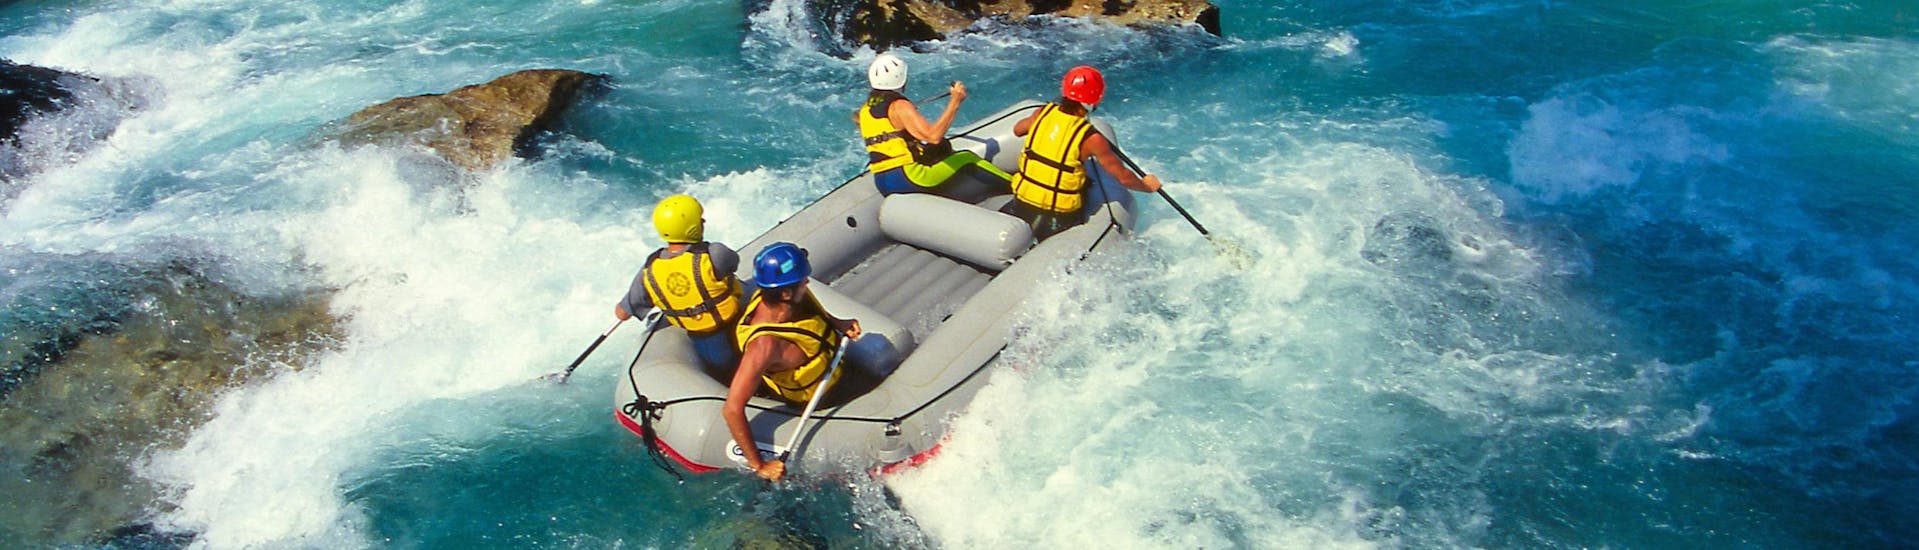 Emozioni forti vissute da un gruppo di giovani nel punto di interesse Sondrio, ideale per fare rafting. 